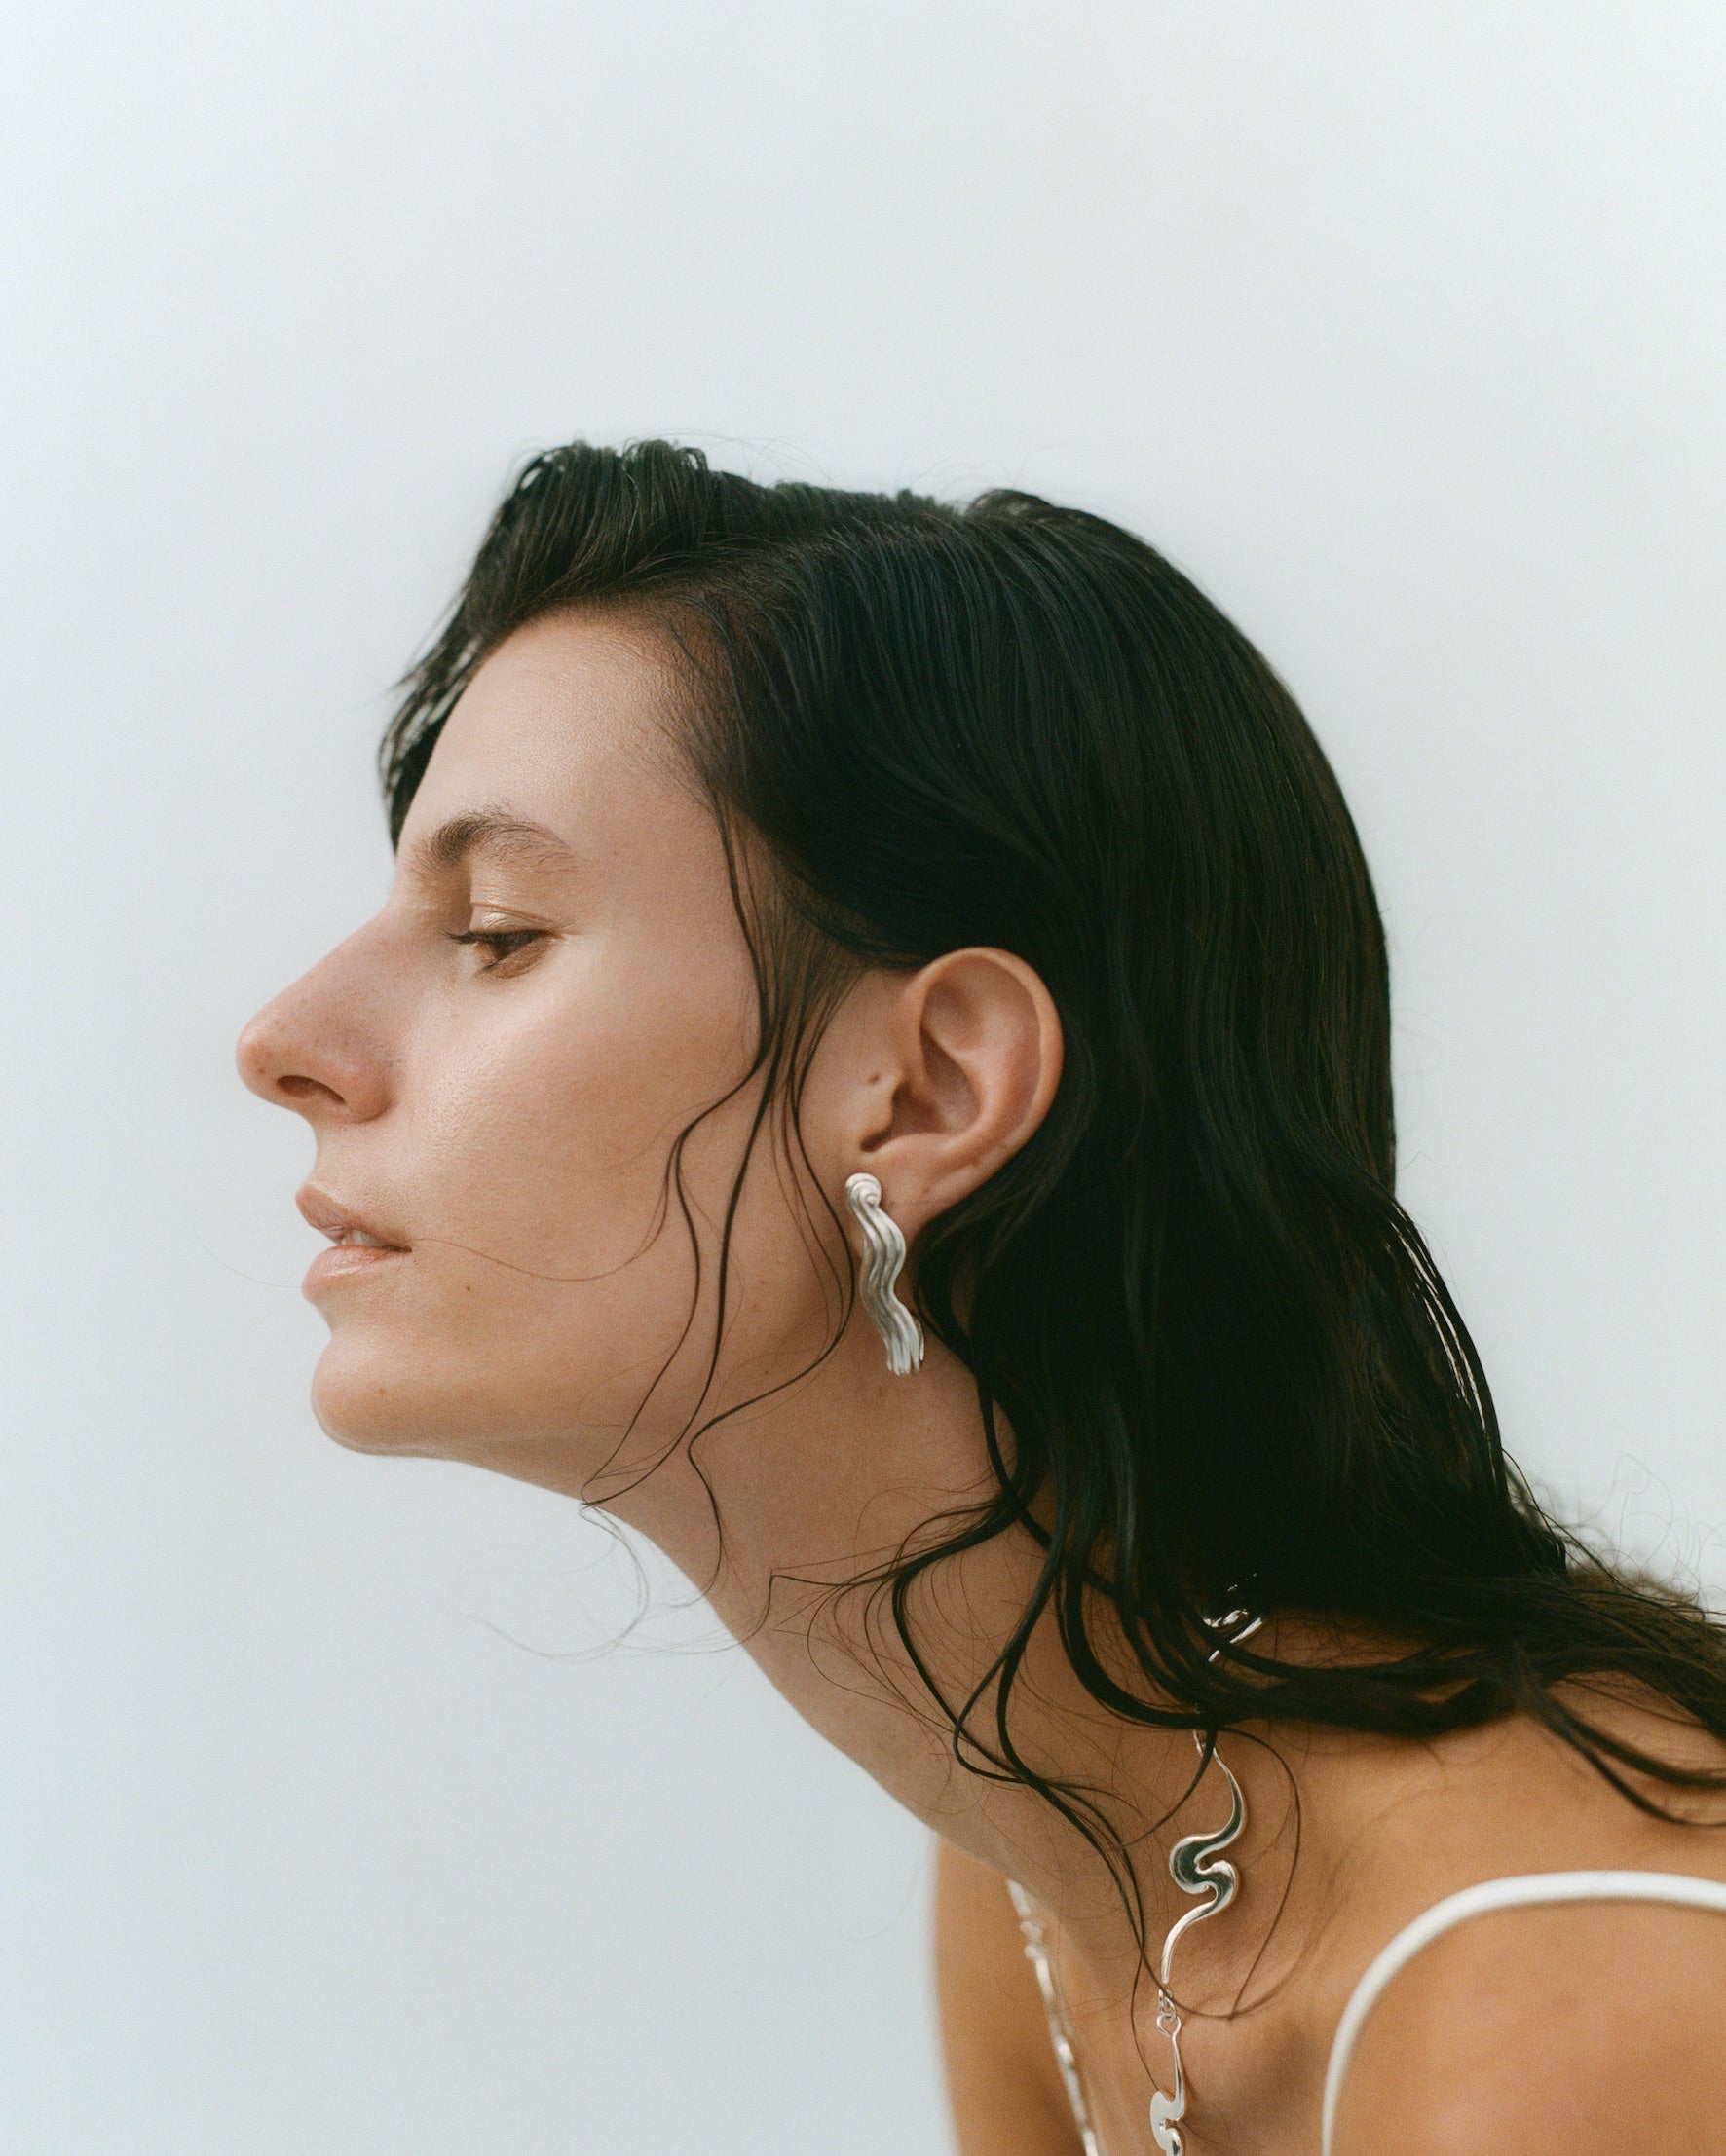 Female models profile, wearing silver jewelry